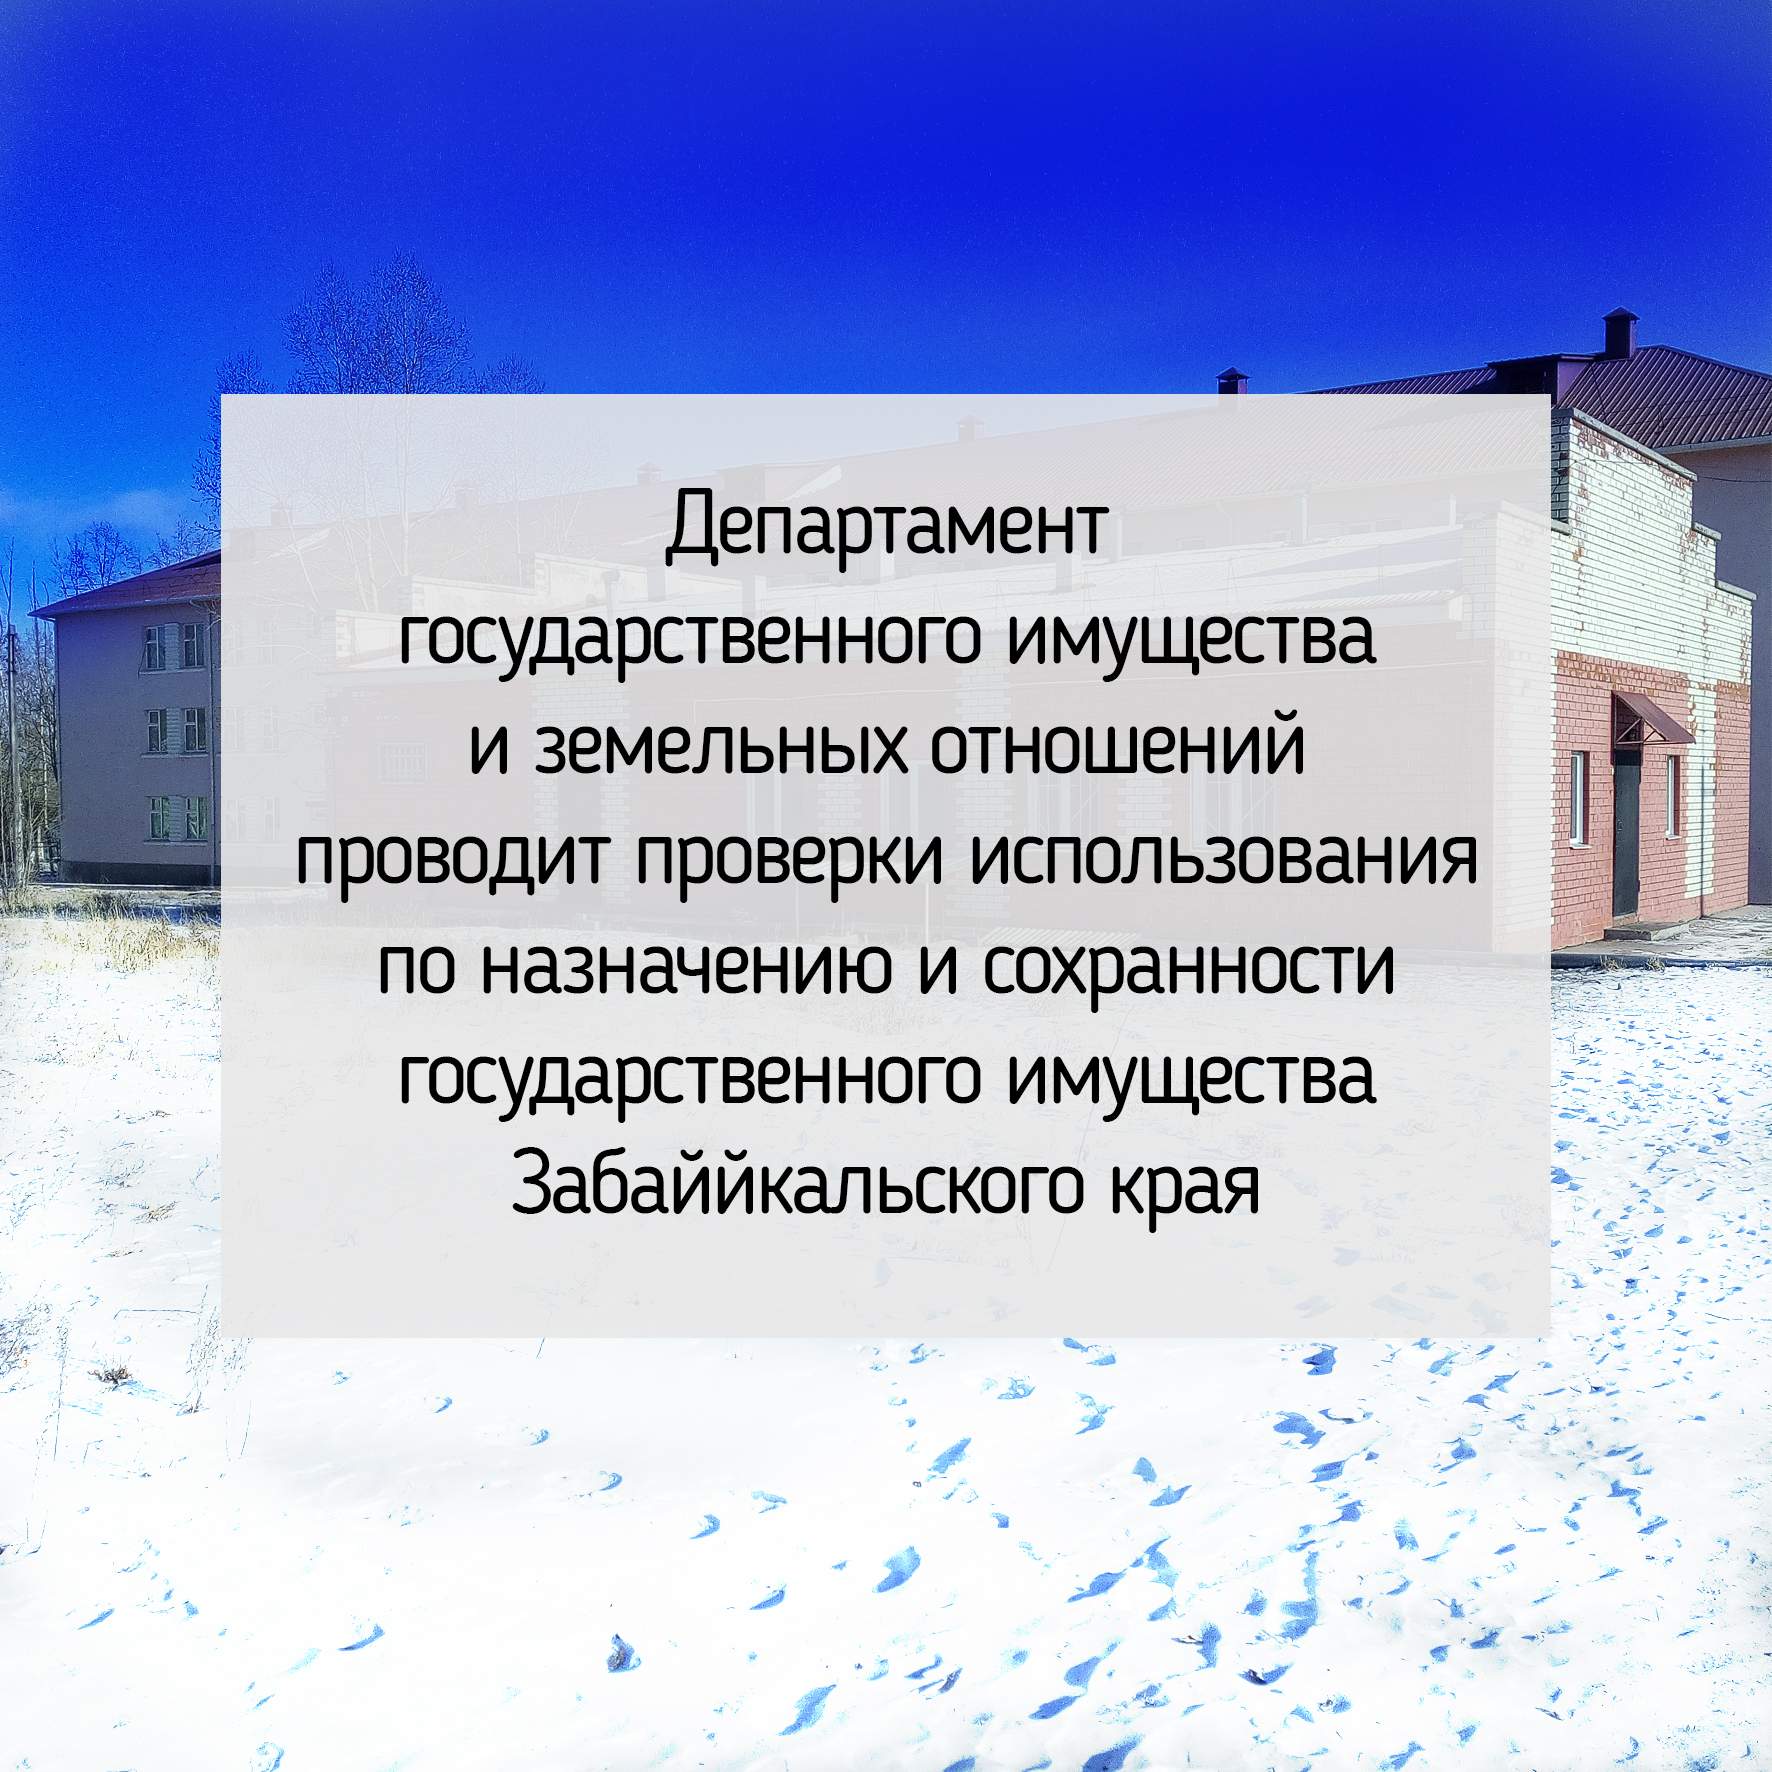 Департамент государственного имущества и земельных отношений проводит проверки использования по назначению и сохранности государственного имущества Забайкальского края